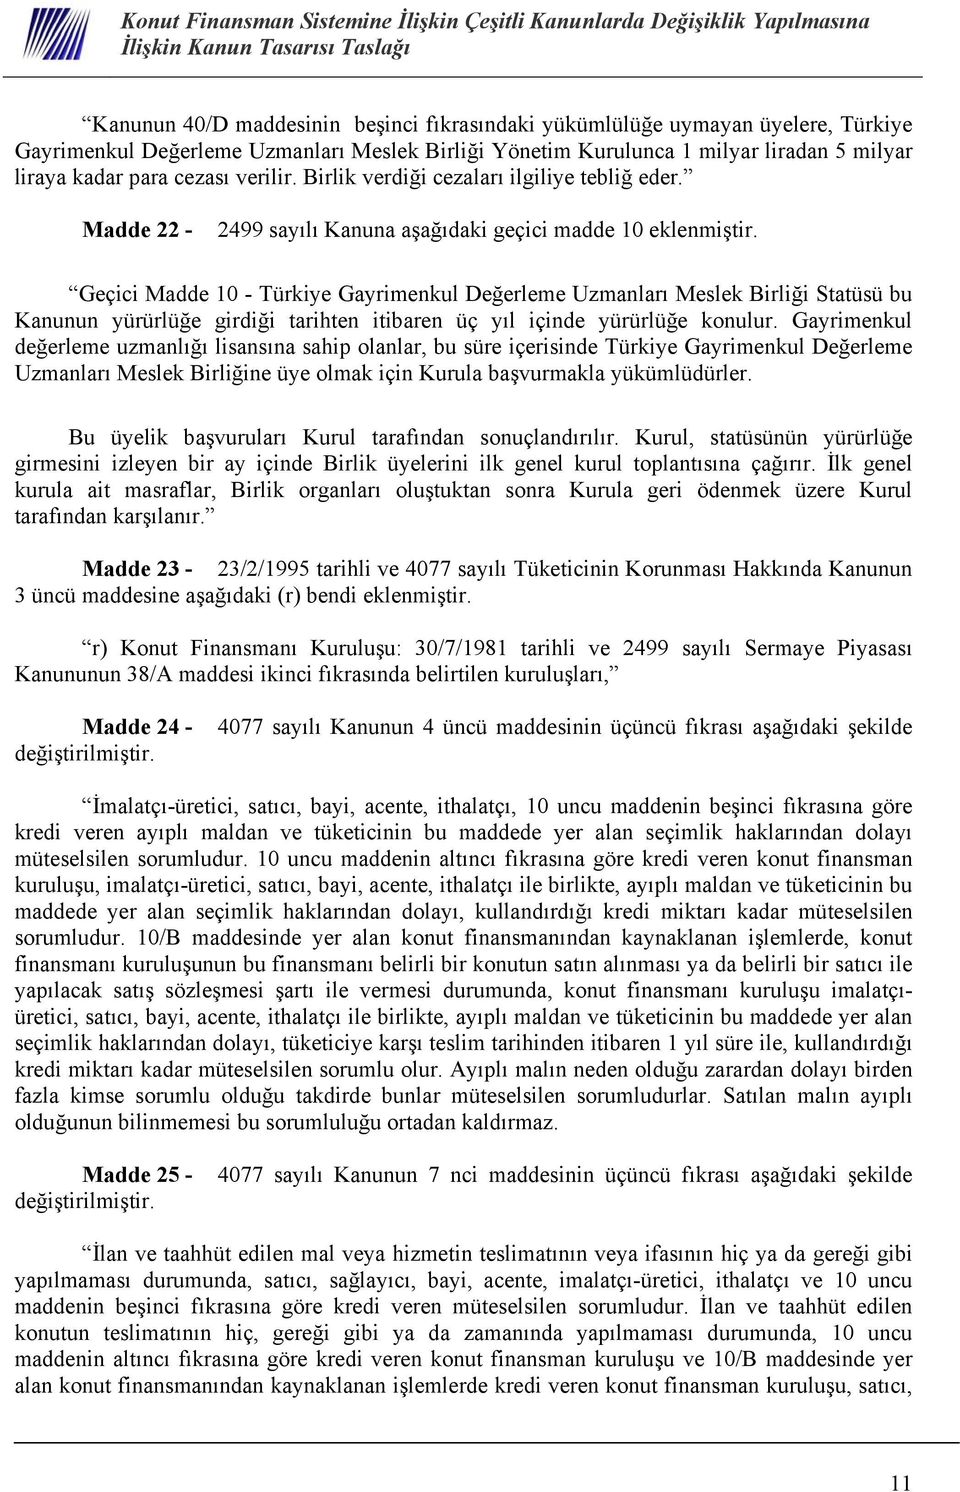 Geçici Madde 10 - Türkiye Gayrimenkul Değerleme Uzmanları Meslek Birliği Statüsü bu Kanunun yürürlüğe girdiği tarihten itibaren üç yıl içinde yürürlüğe konulur.